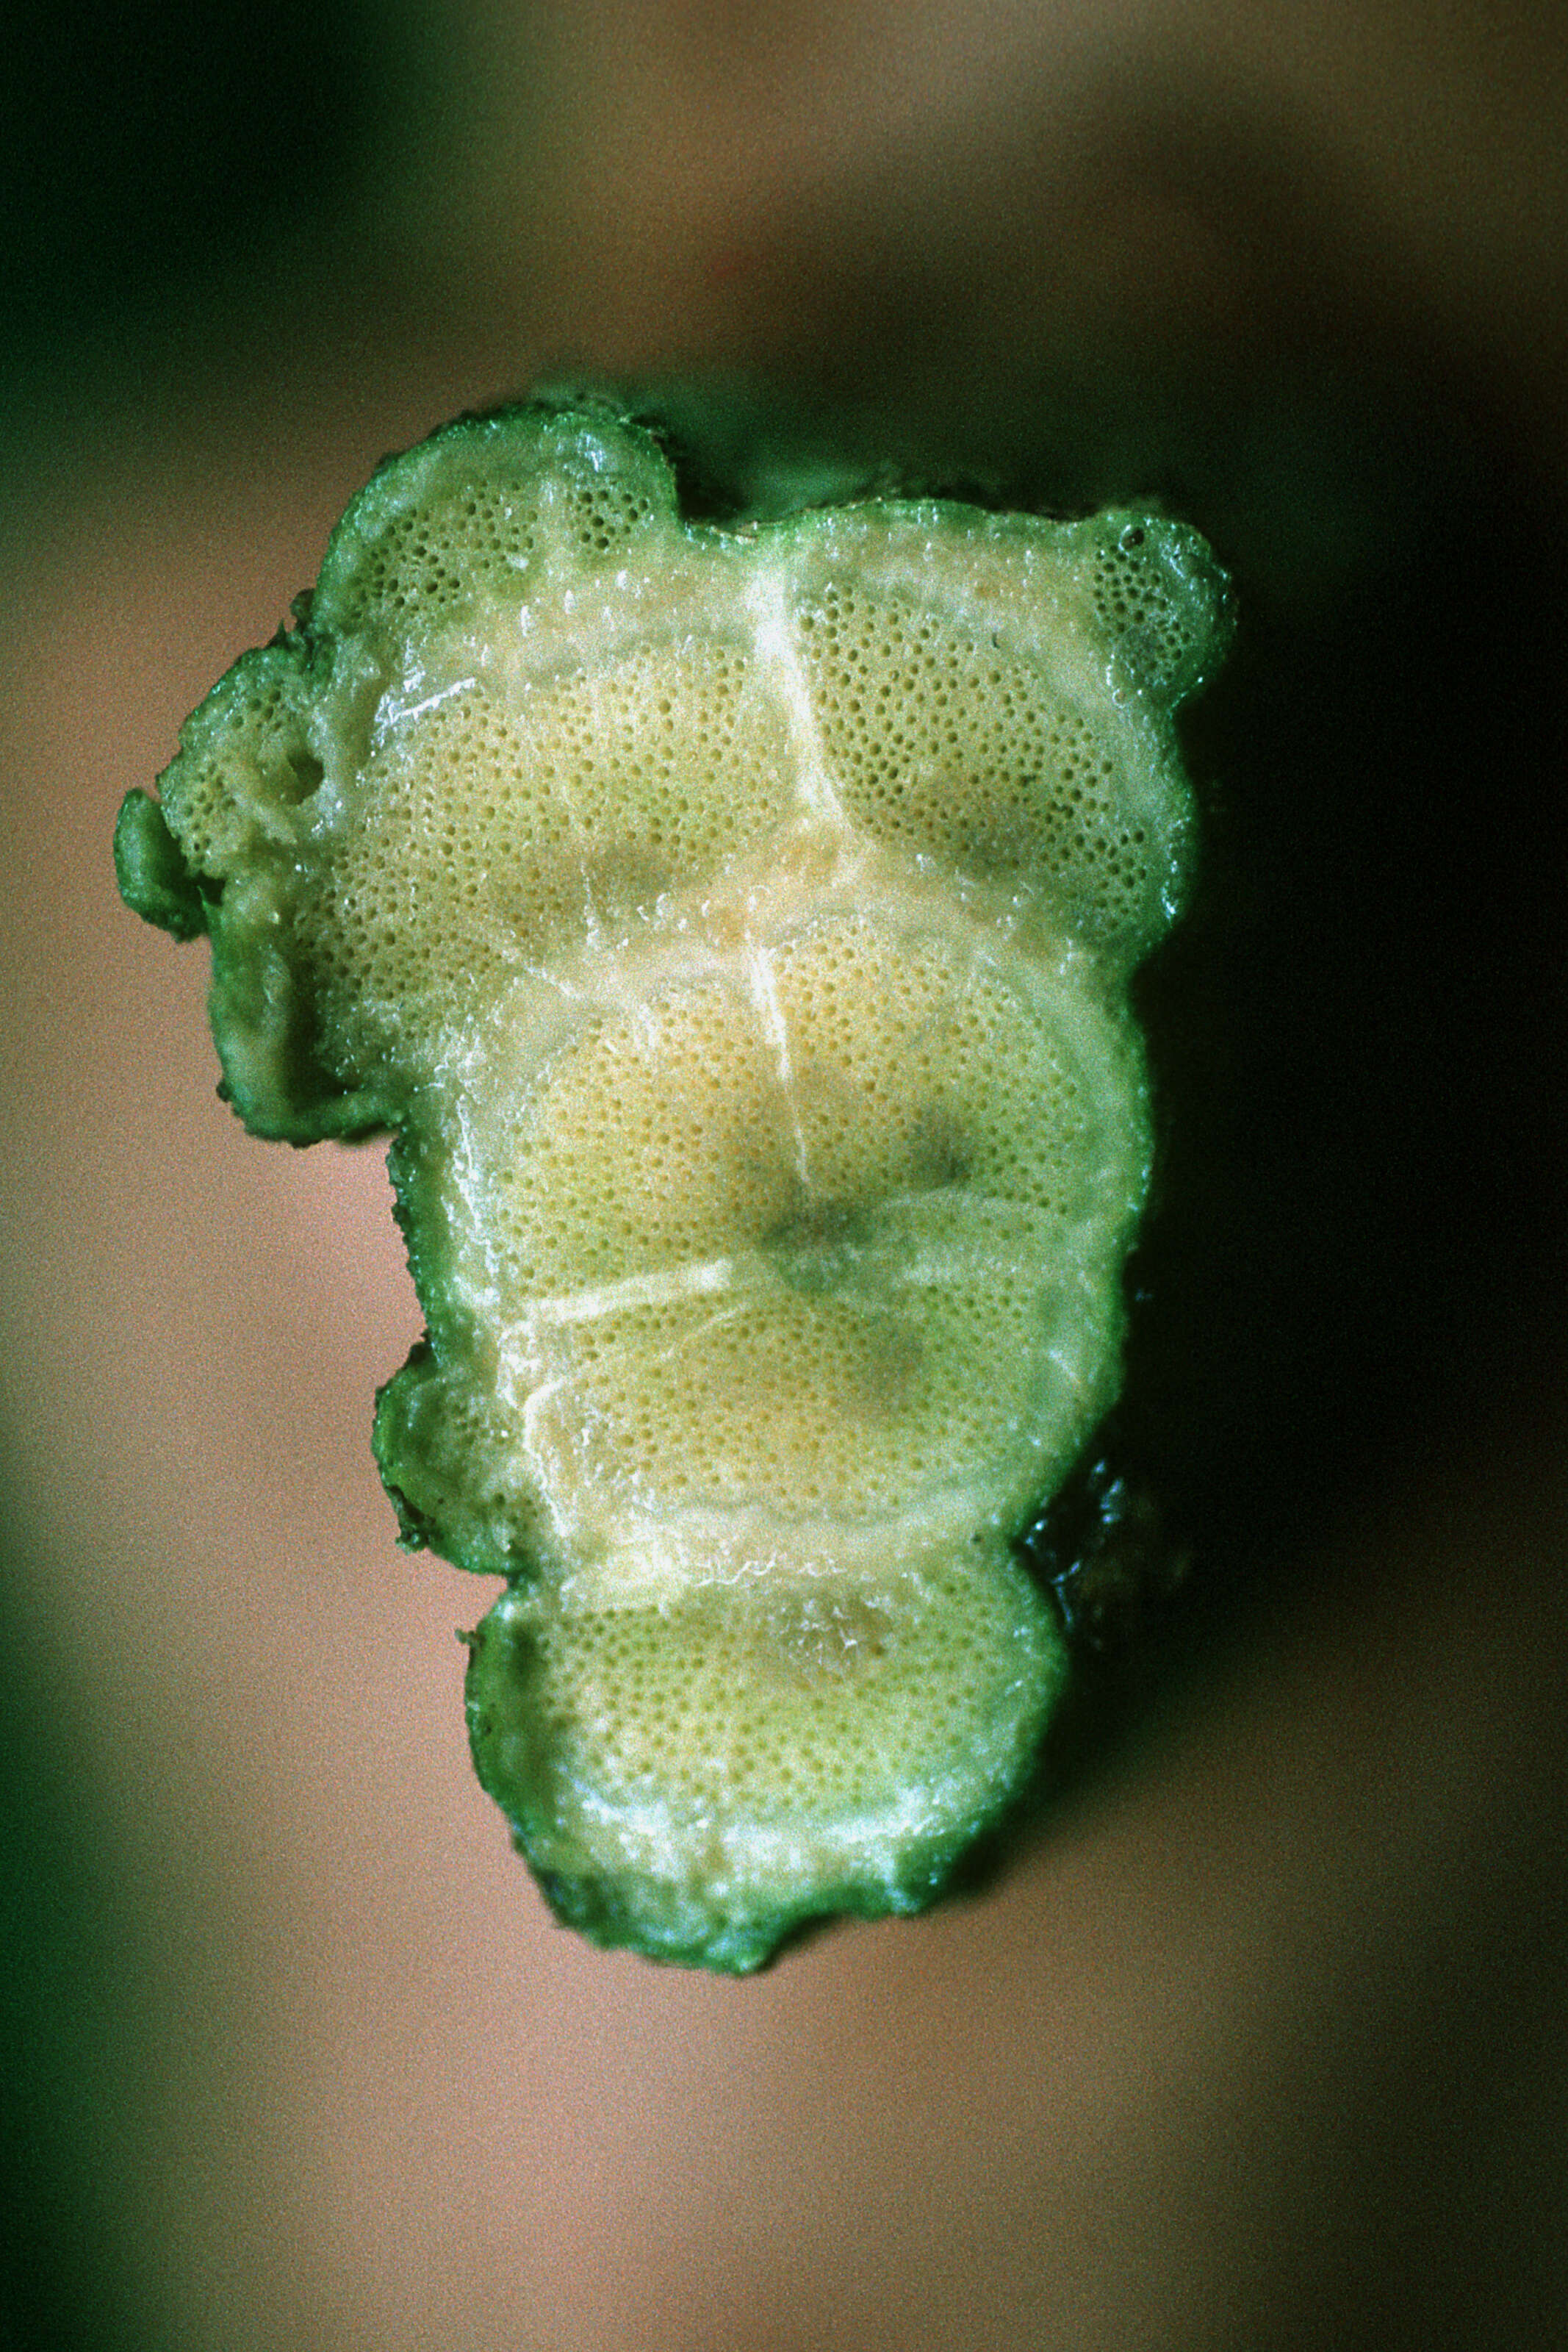 Image of Christmas vine